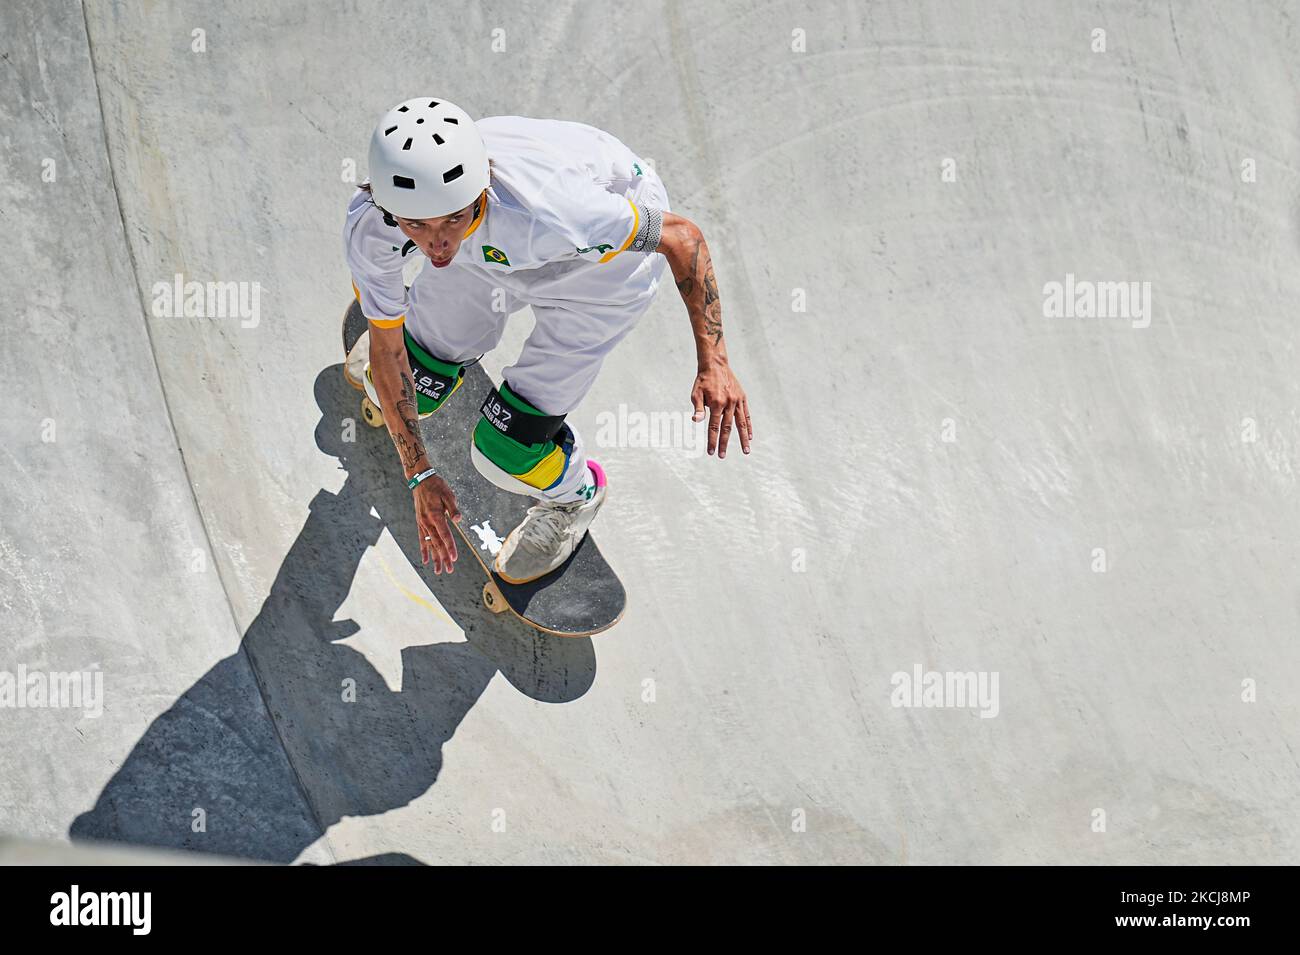 Luiz Francisco pendant le skateboard du parc pour hommes aux Jeux Olympiques du parc urbain Ariake, Tokyo, Japon sur 5 août 2021. (Photo par Ulrik Pedersen/NurPhoto) Banque D'Images